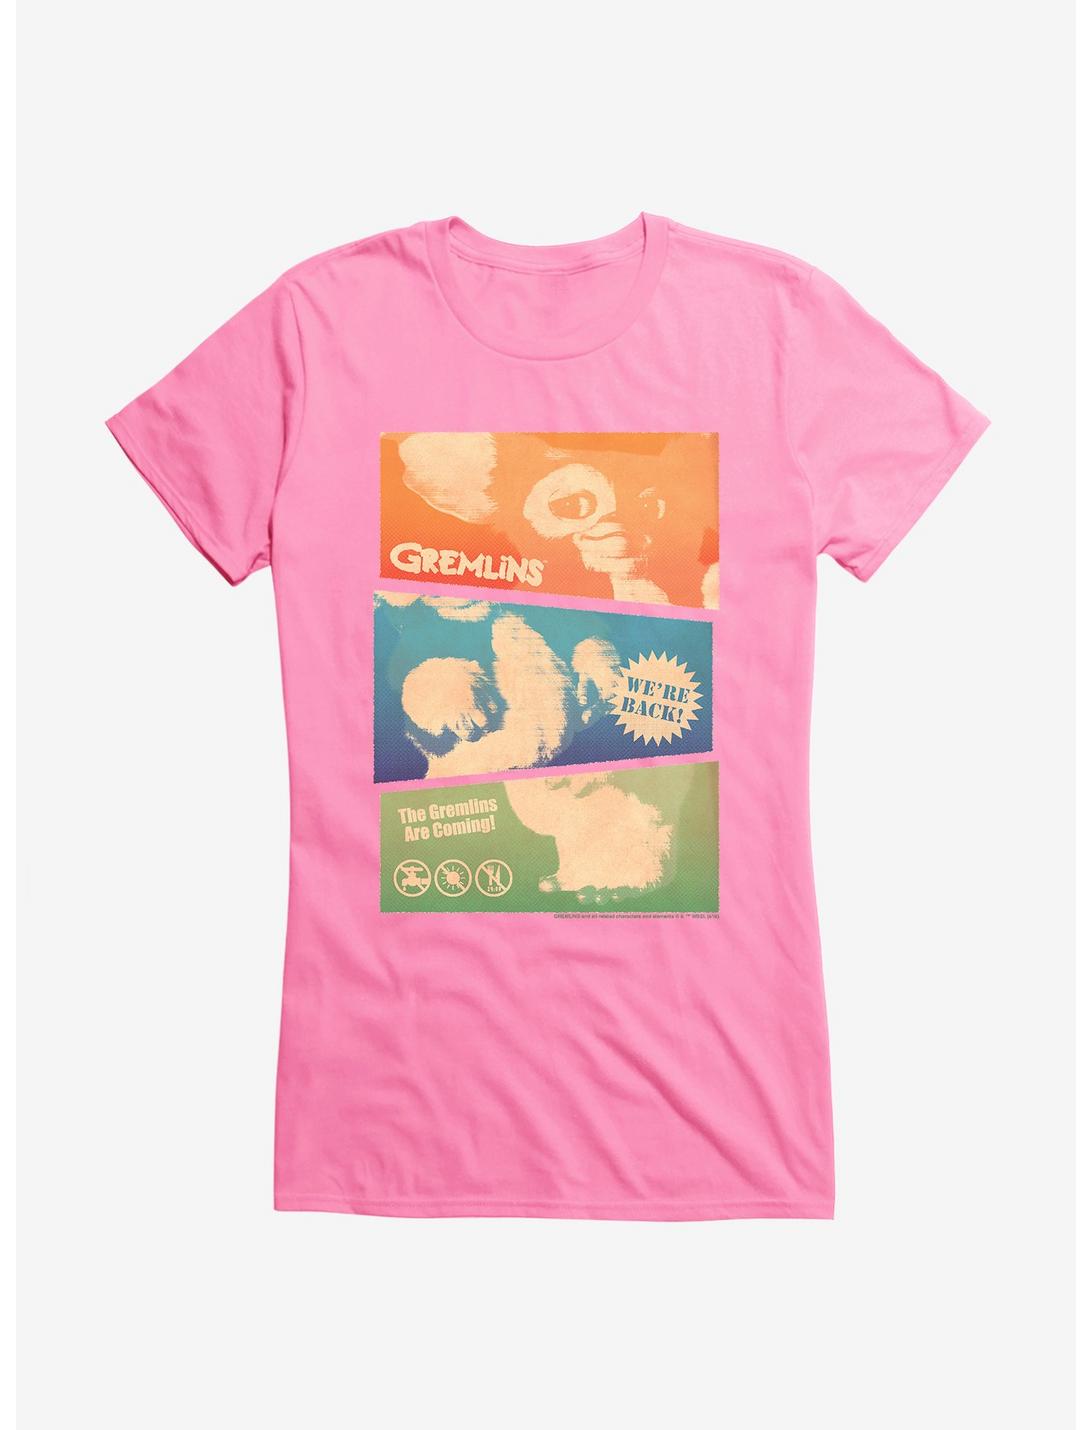 Gremlins Gizmo Collage Girls T-Shirt, , hi-res